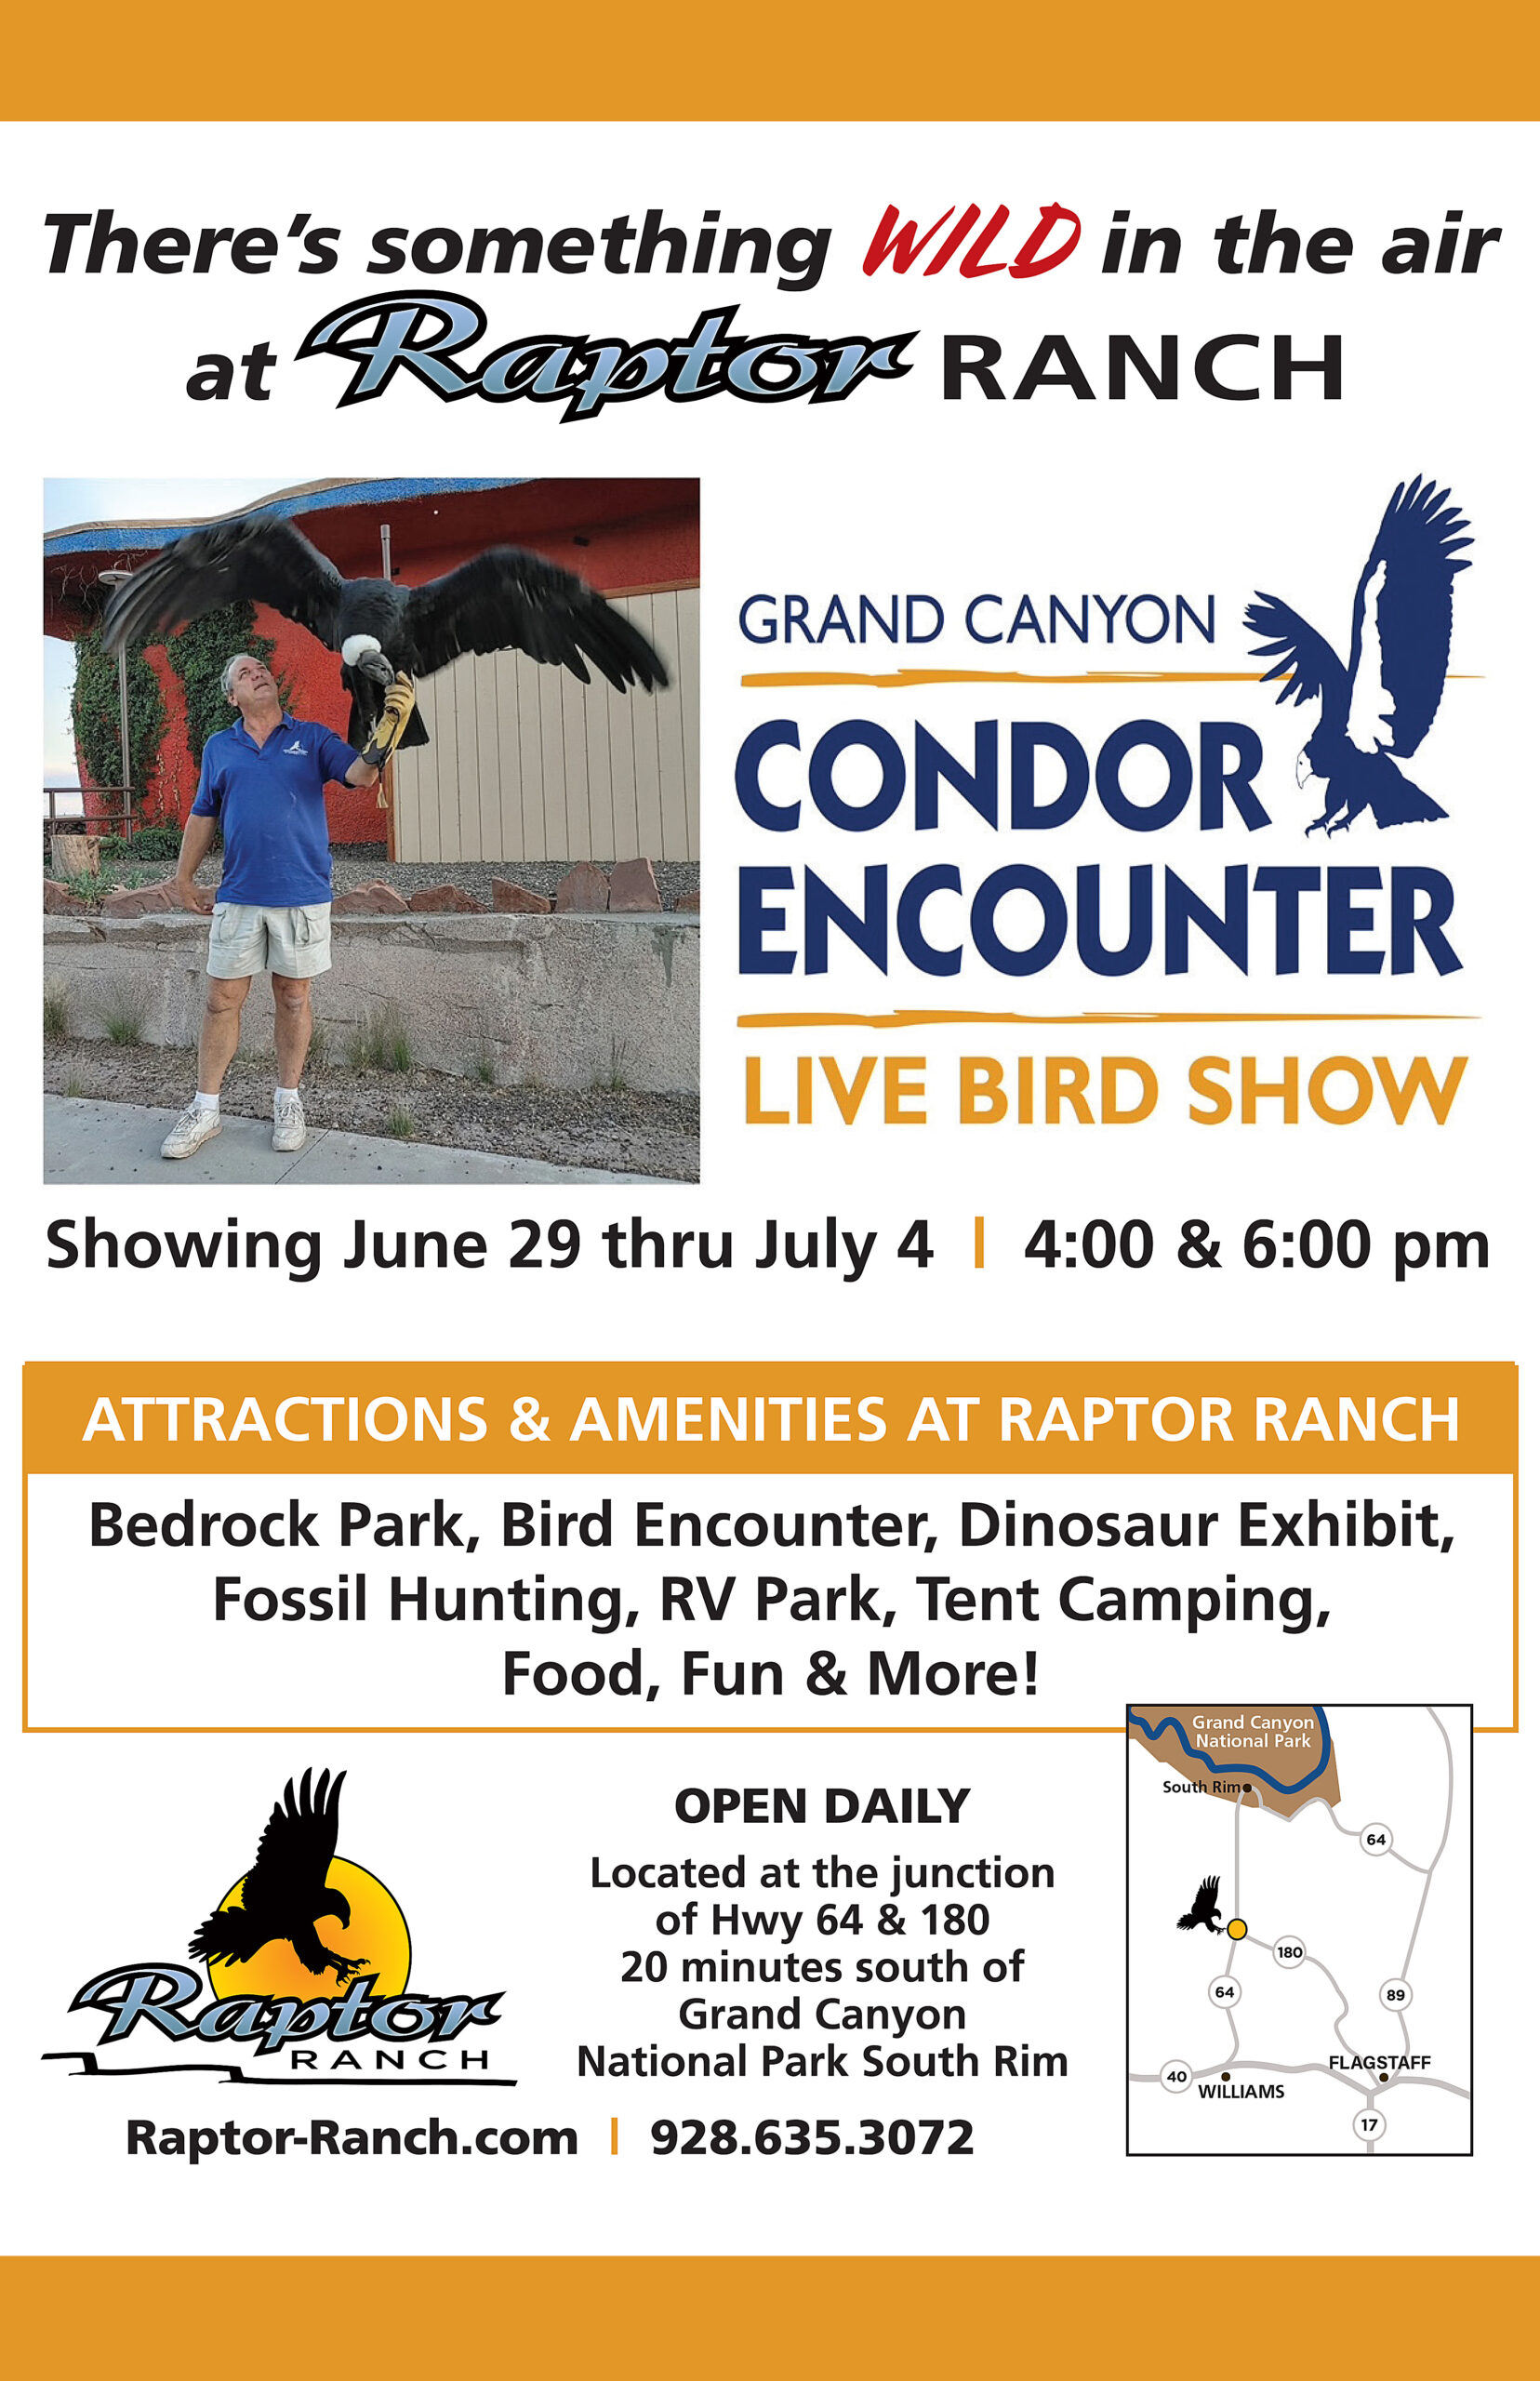 Grand Canyon Condor Encounter at Raptor Ranch, AZ